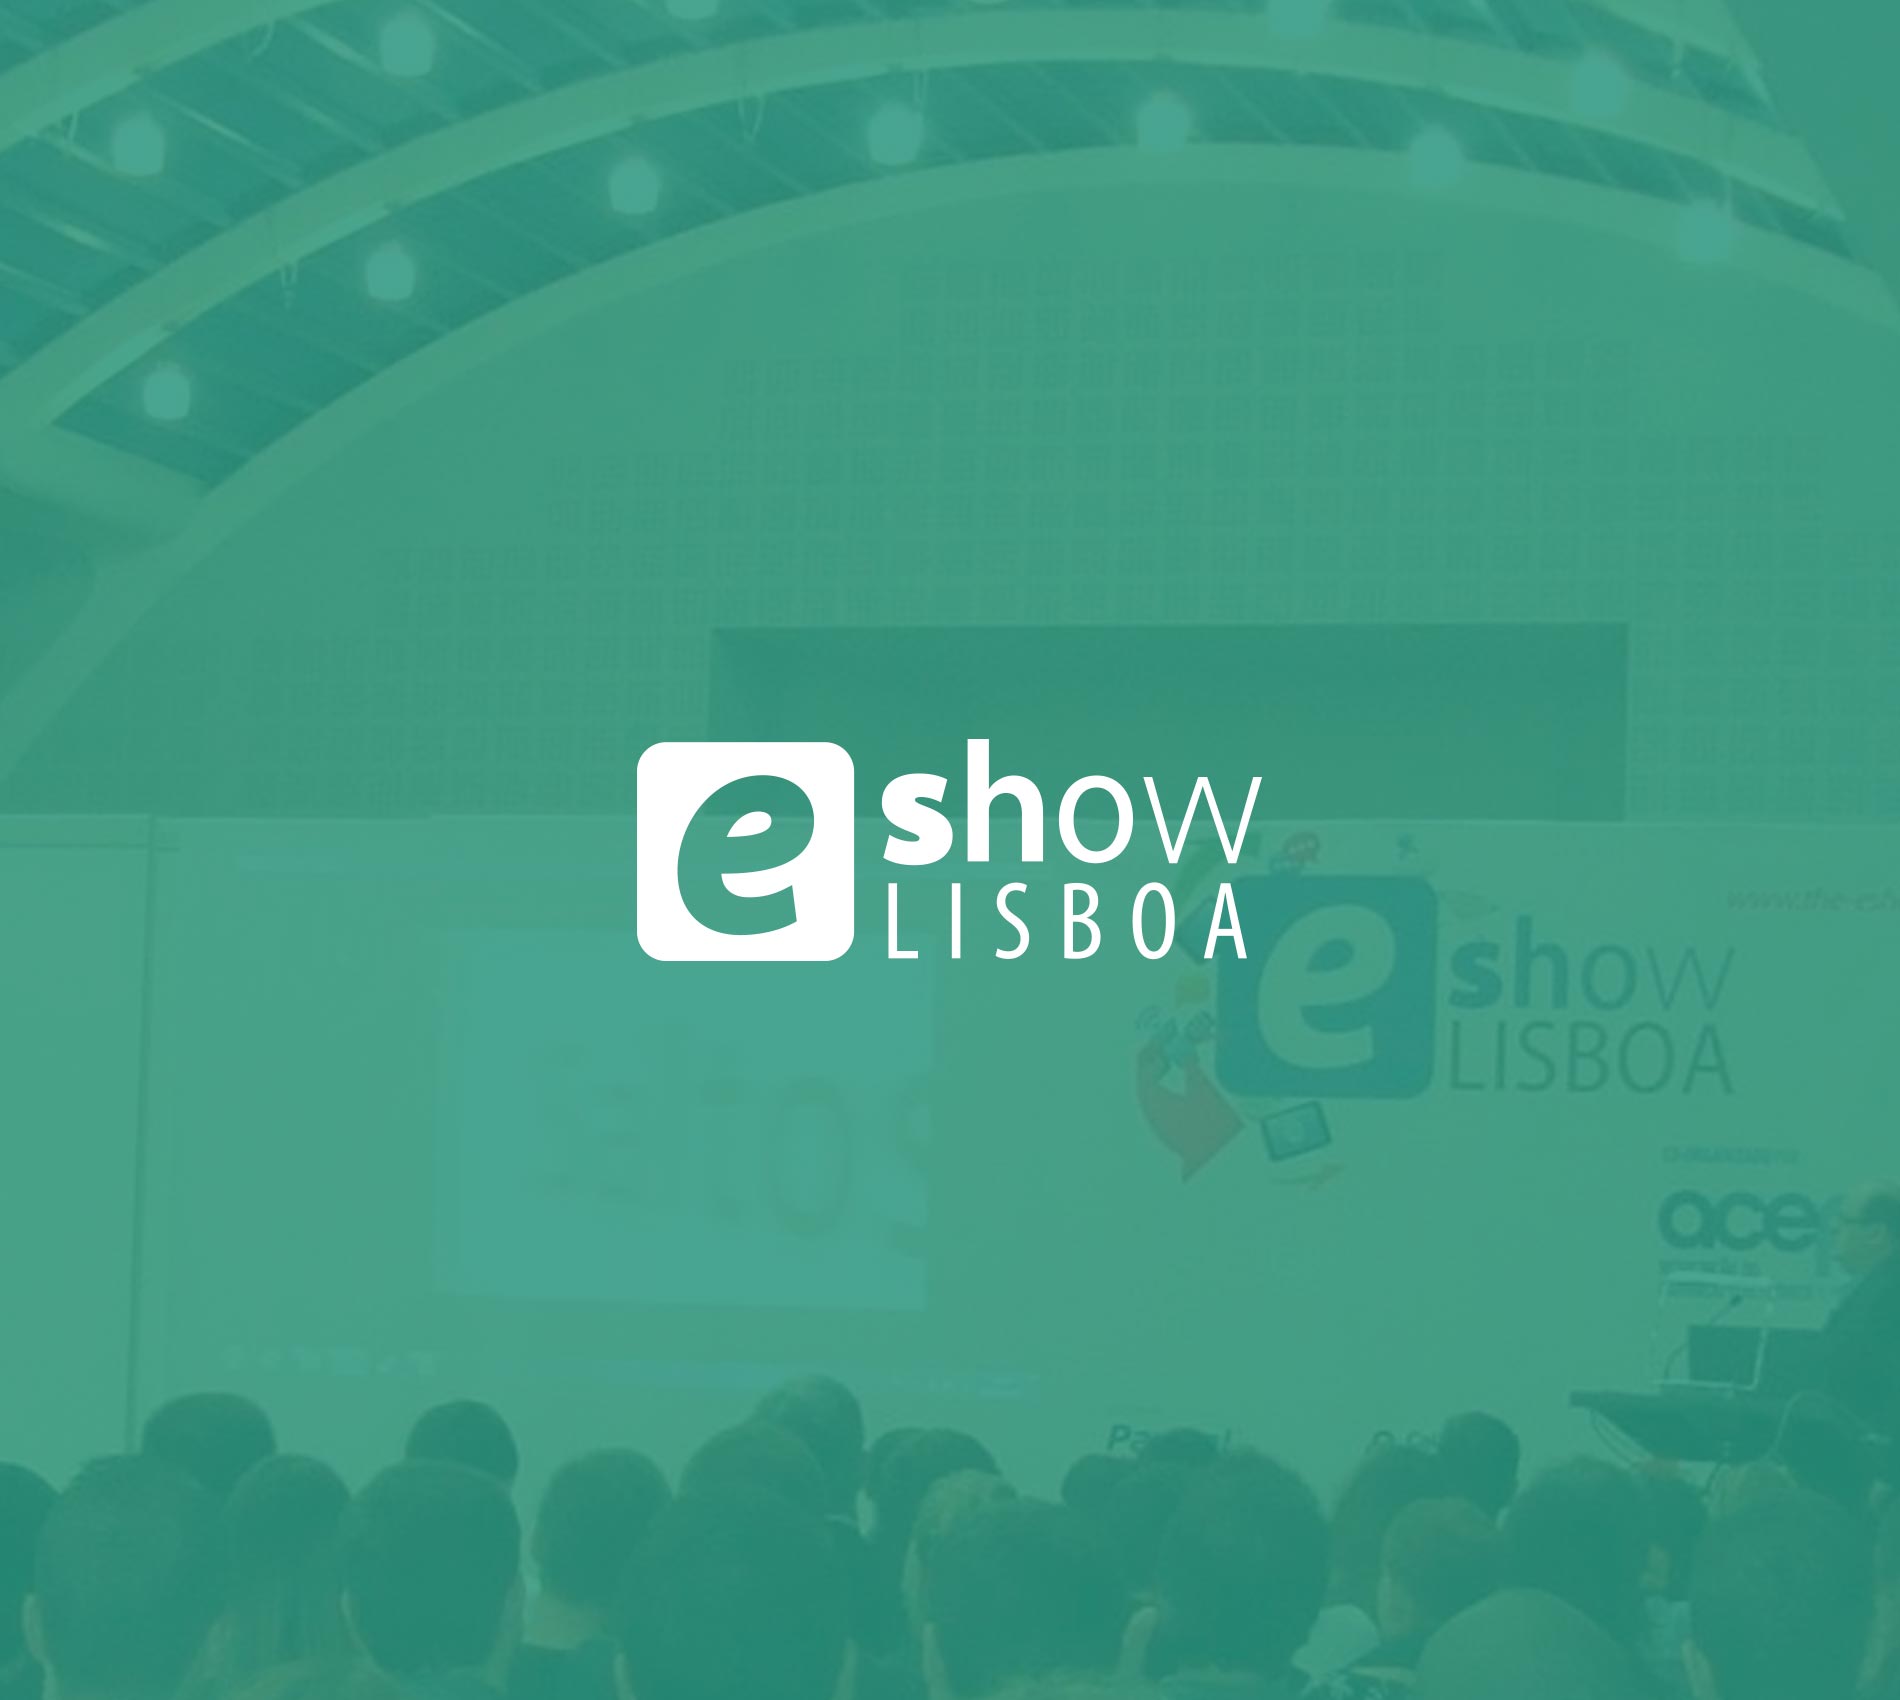 E-show 2013, Lisboa